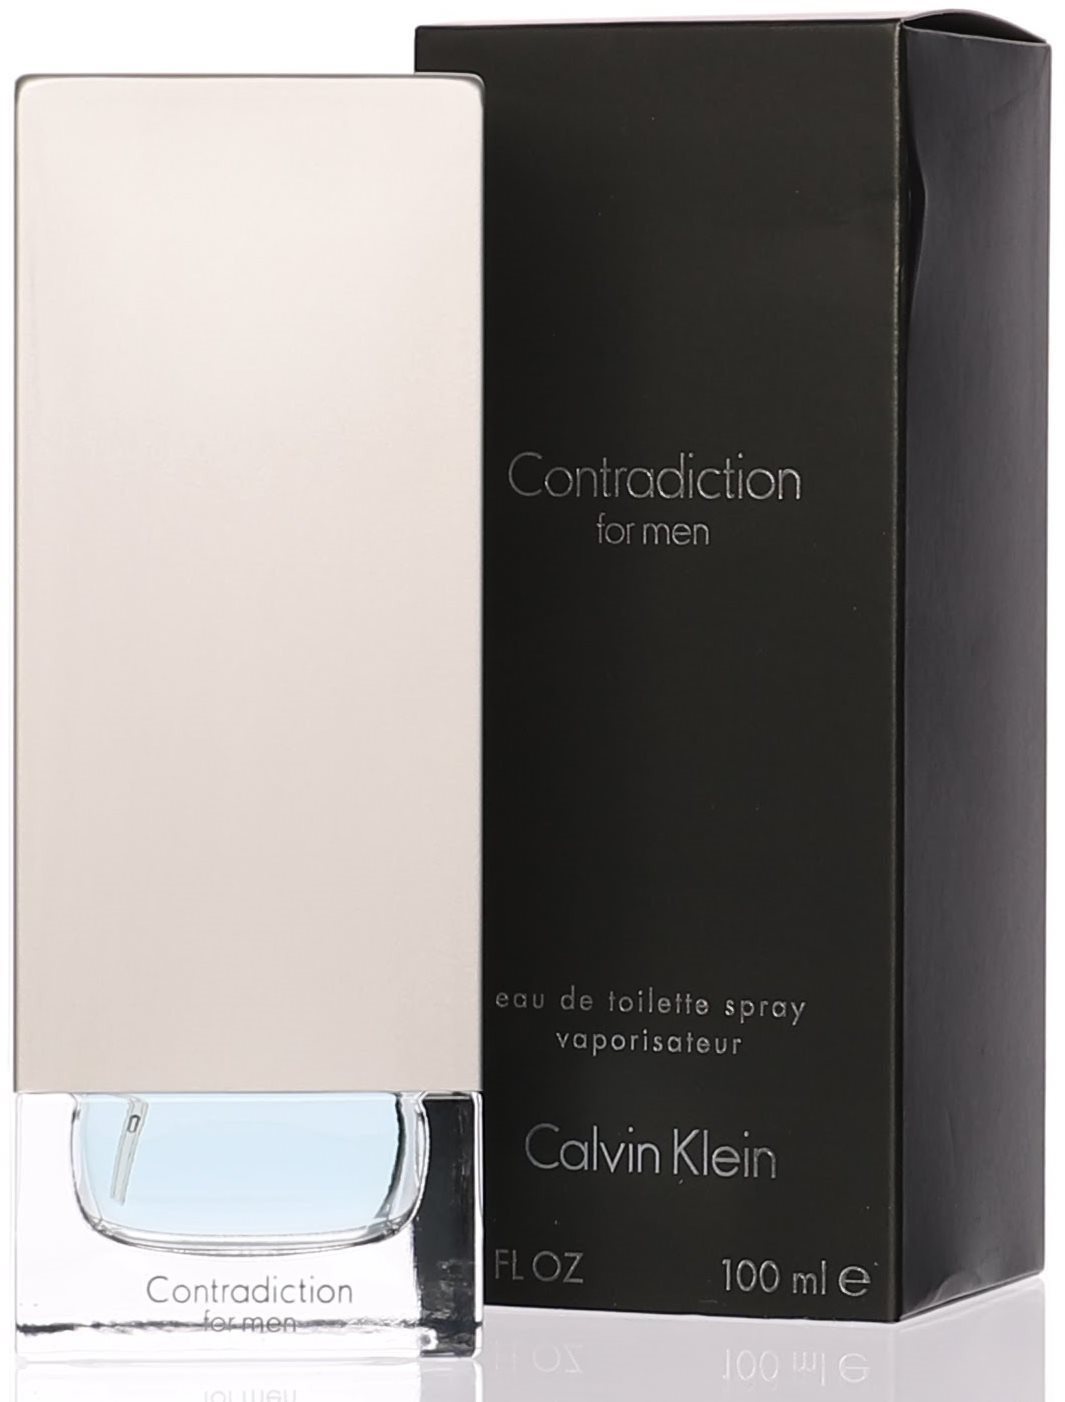 CALVIN KLEIN Contradiction for Men EdT 100 ml